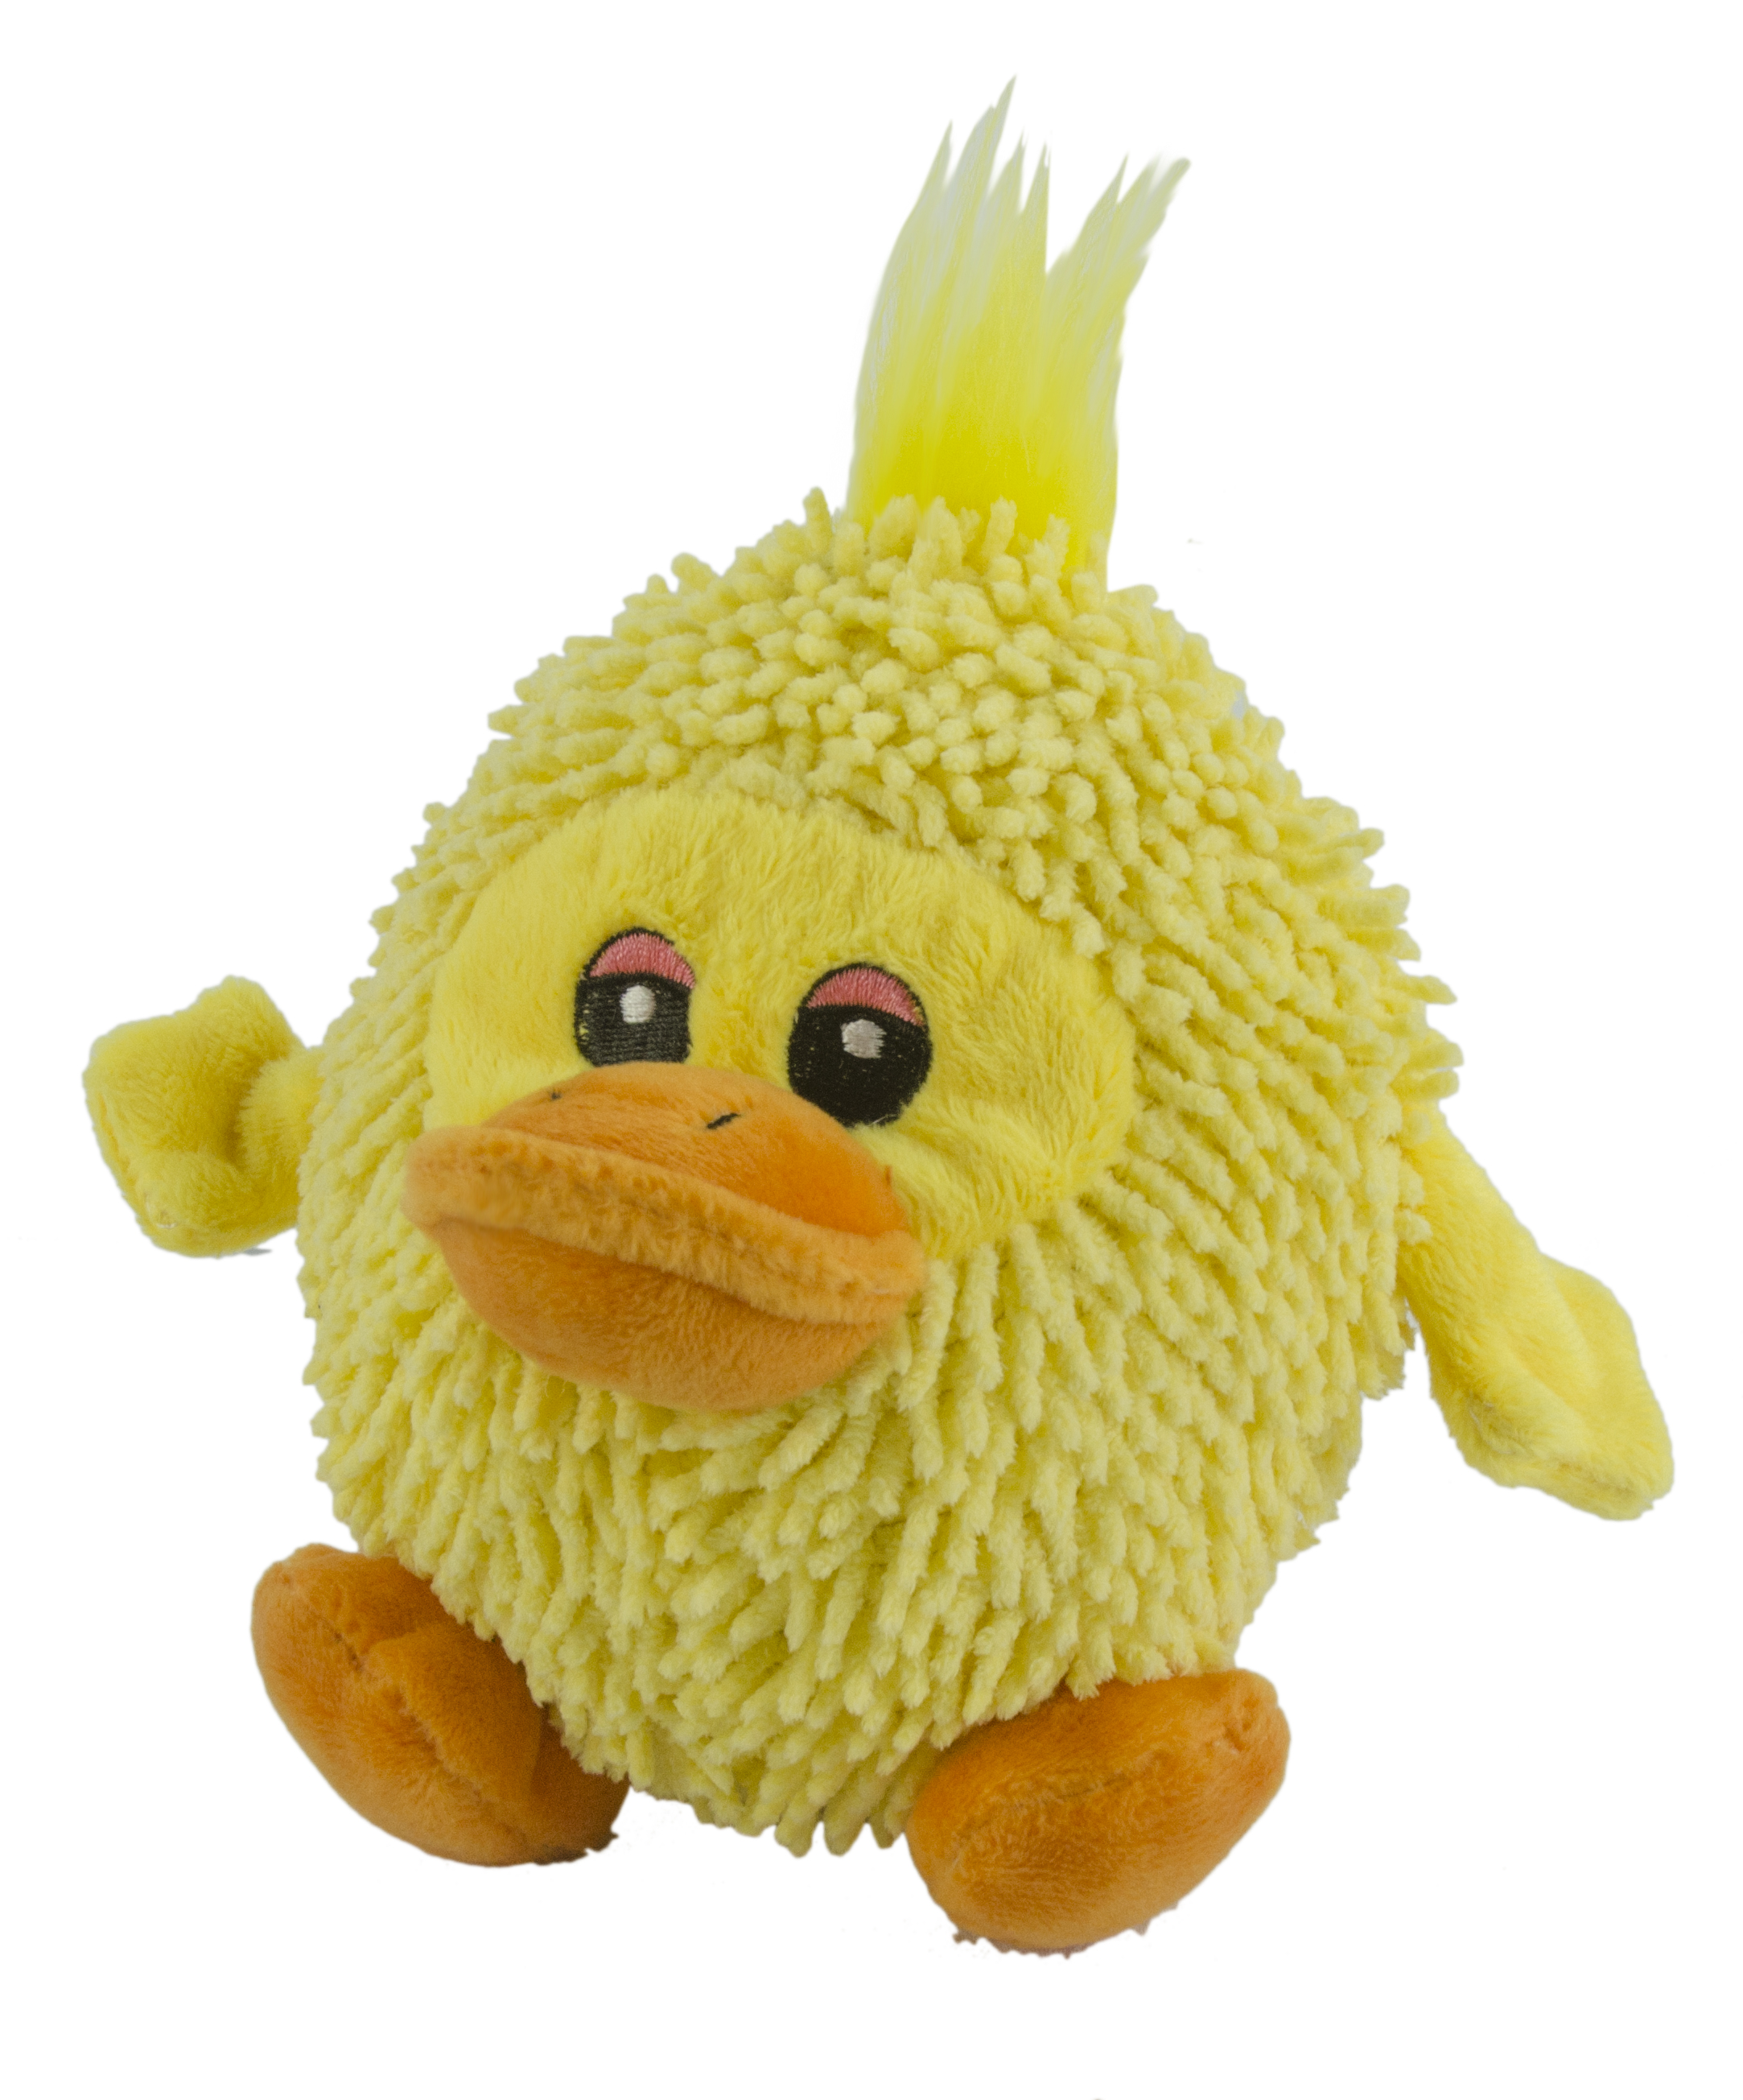 Fuzzle Duck mit Quietscher - gelb